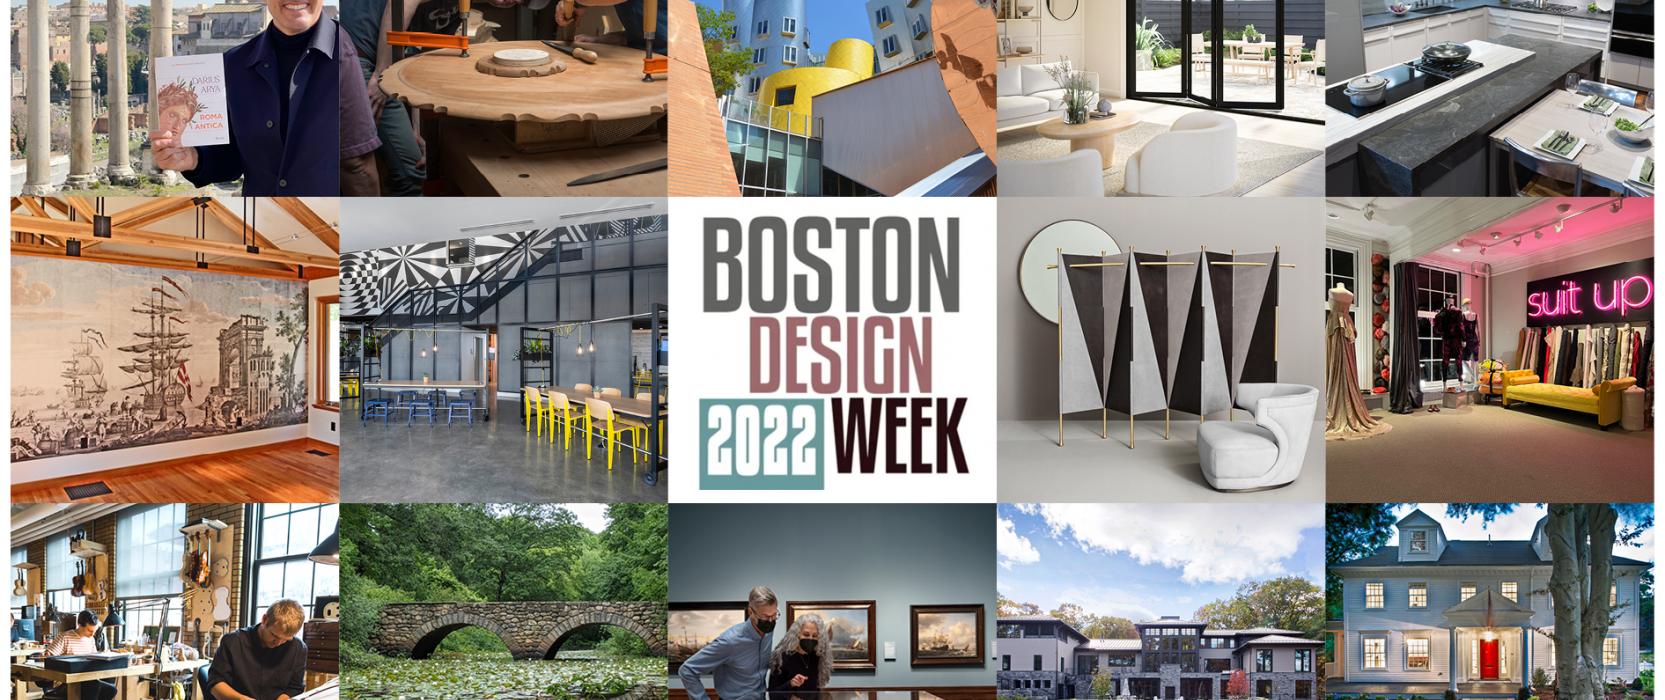 Design Week 2022 banner image